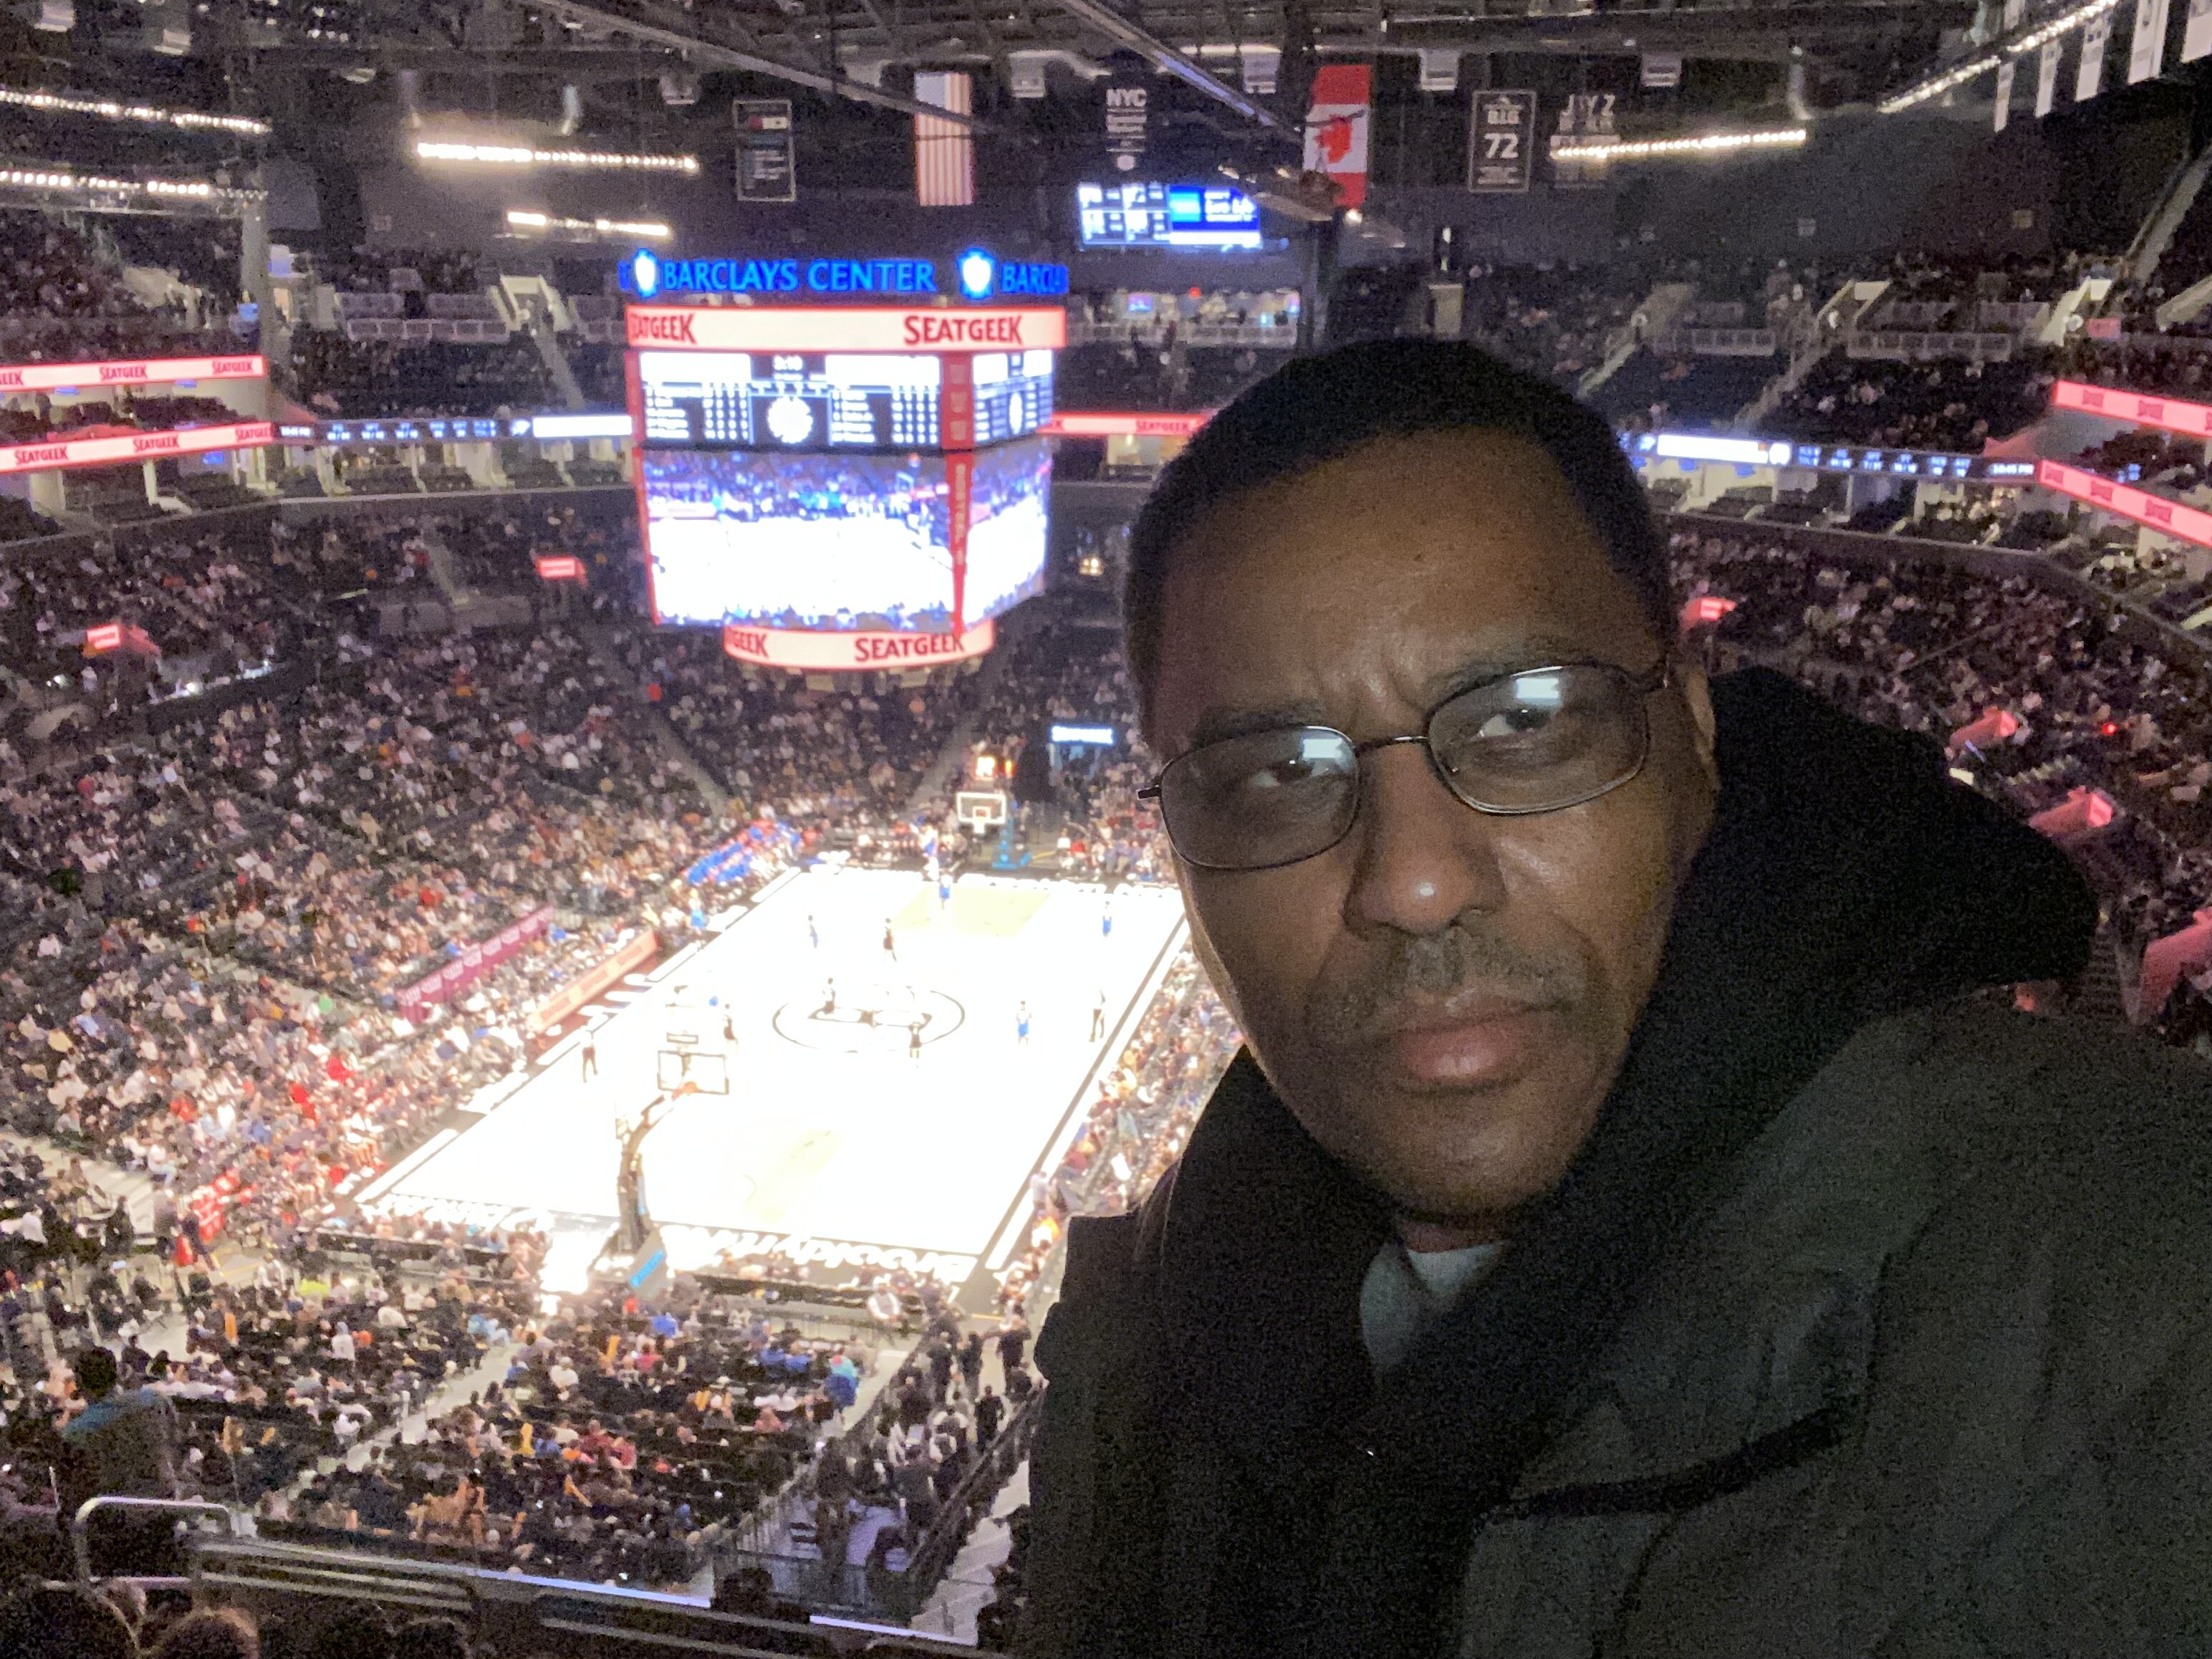 Brooklyn Nets vs. Oklahoma City Thunder - NBA vs Oklahoma City Thunder